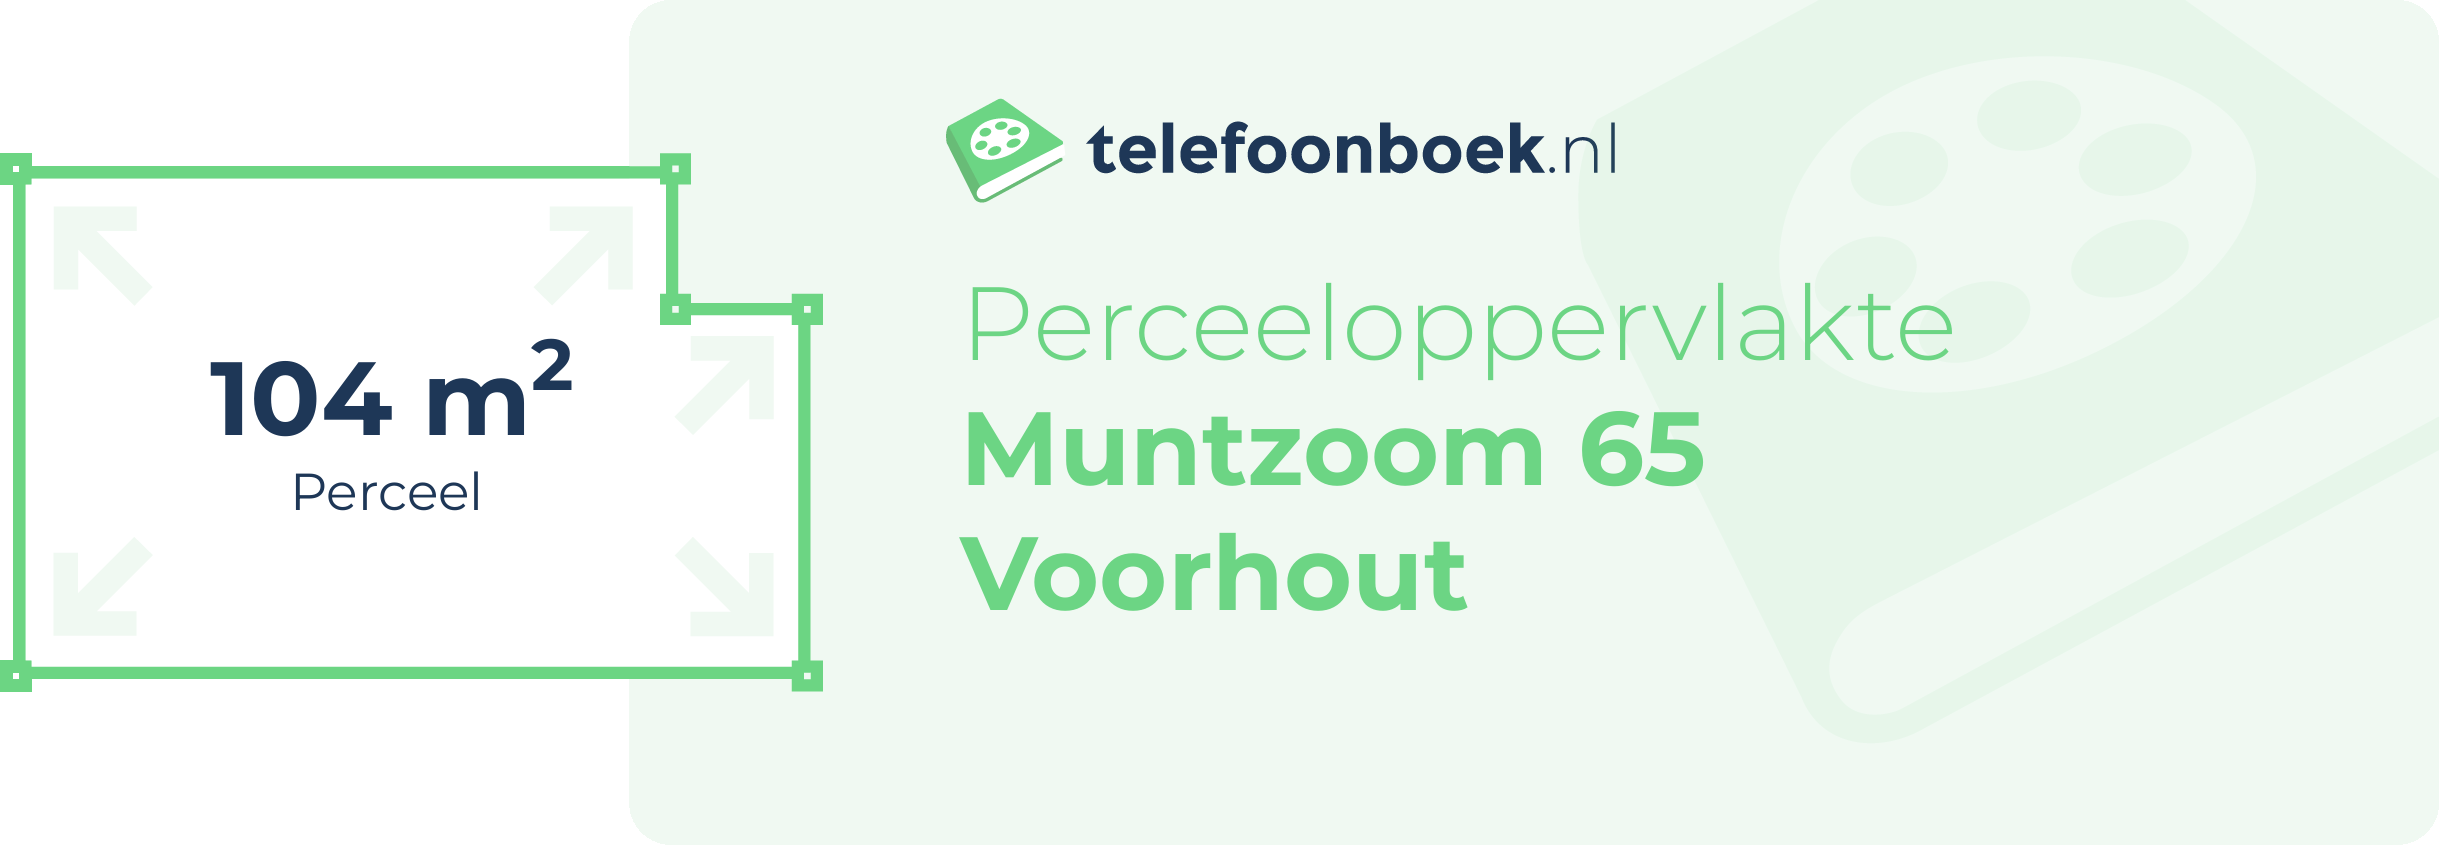 Perceeloppervlakte Muntzoom 65 Voorhout